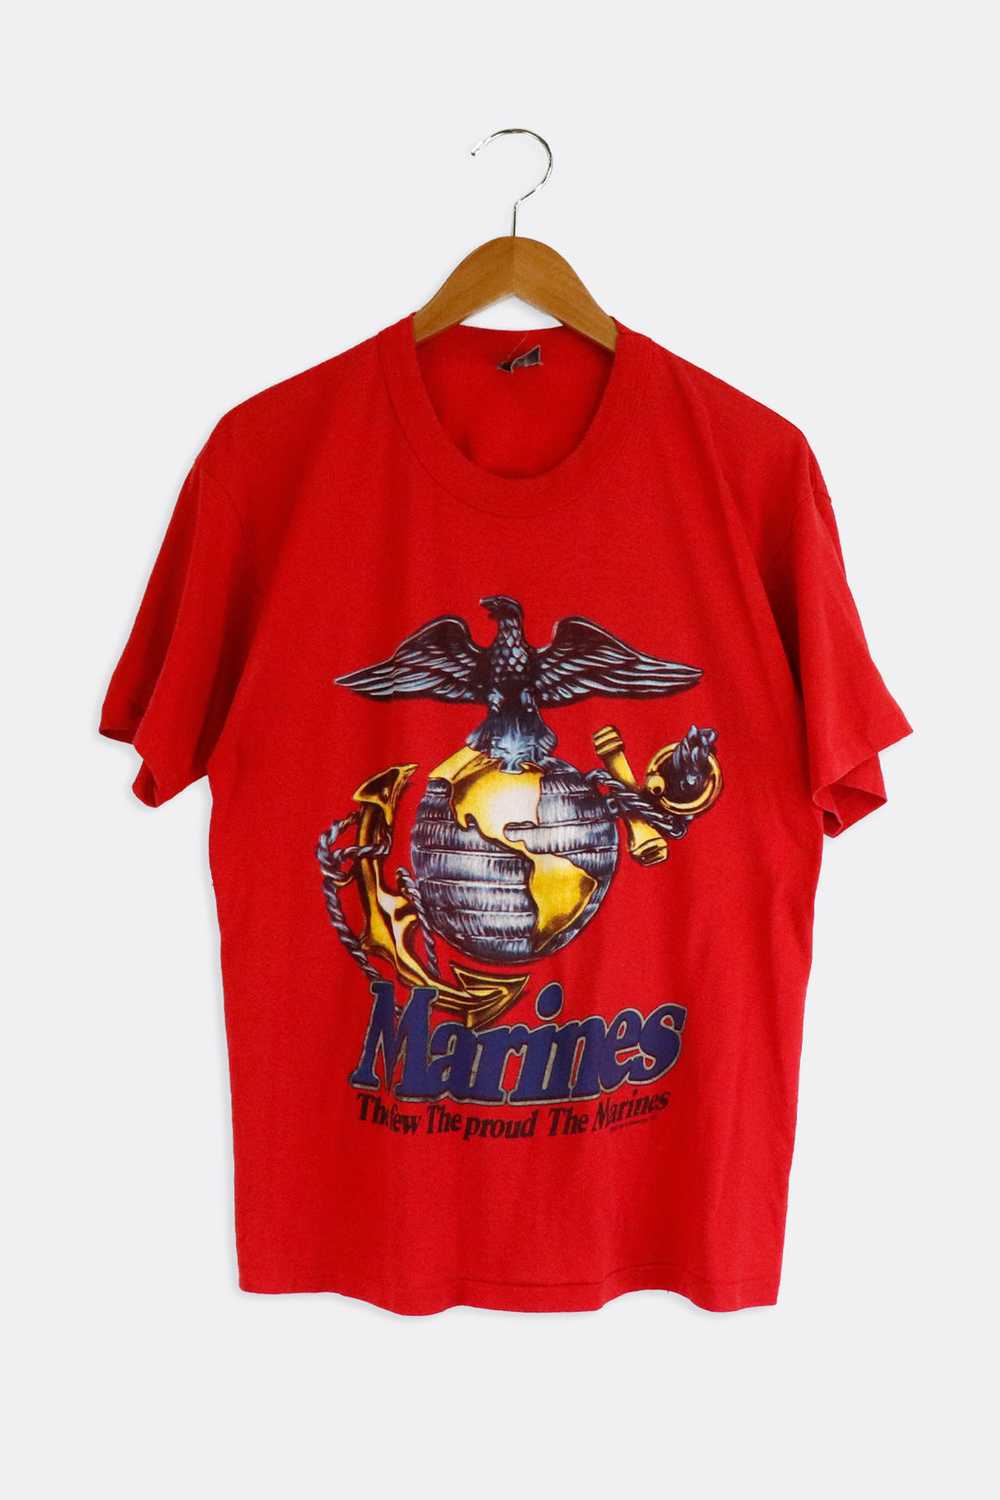 Vintage 1993 The Few Proud Marines T Shirt Sz L - image 1